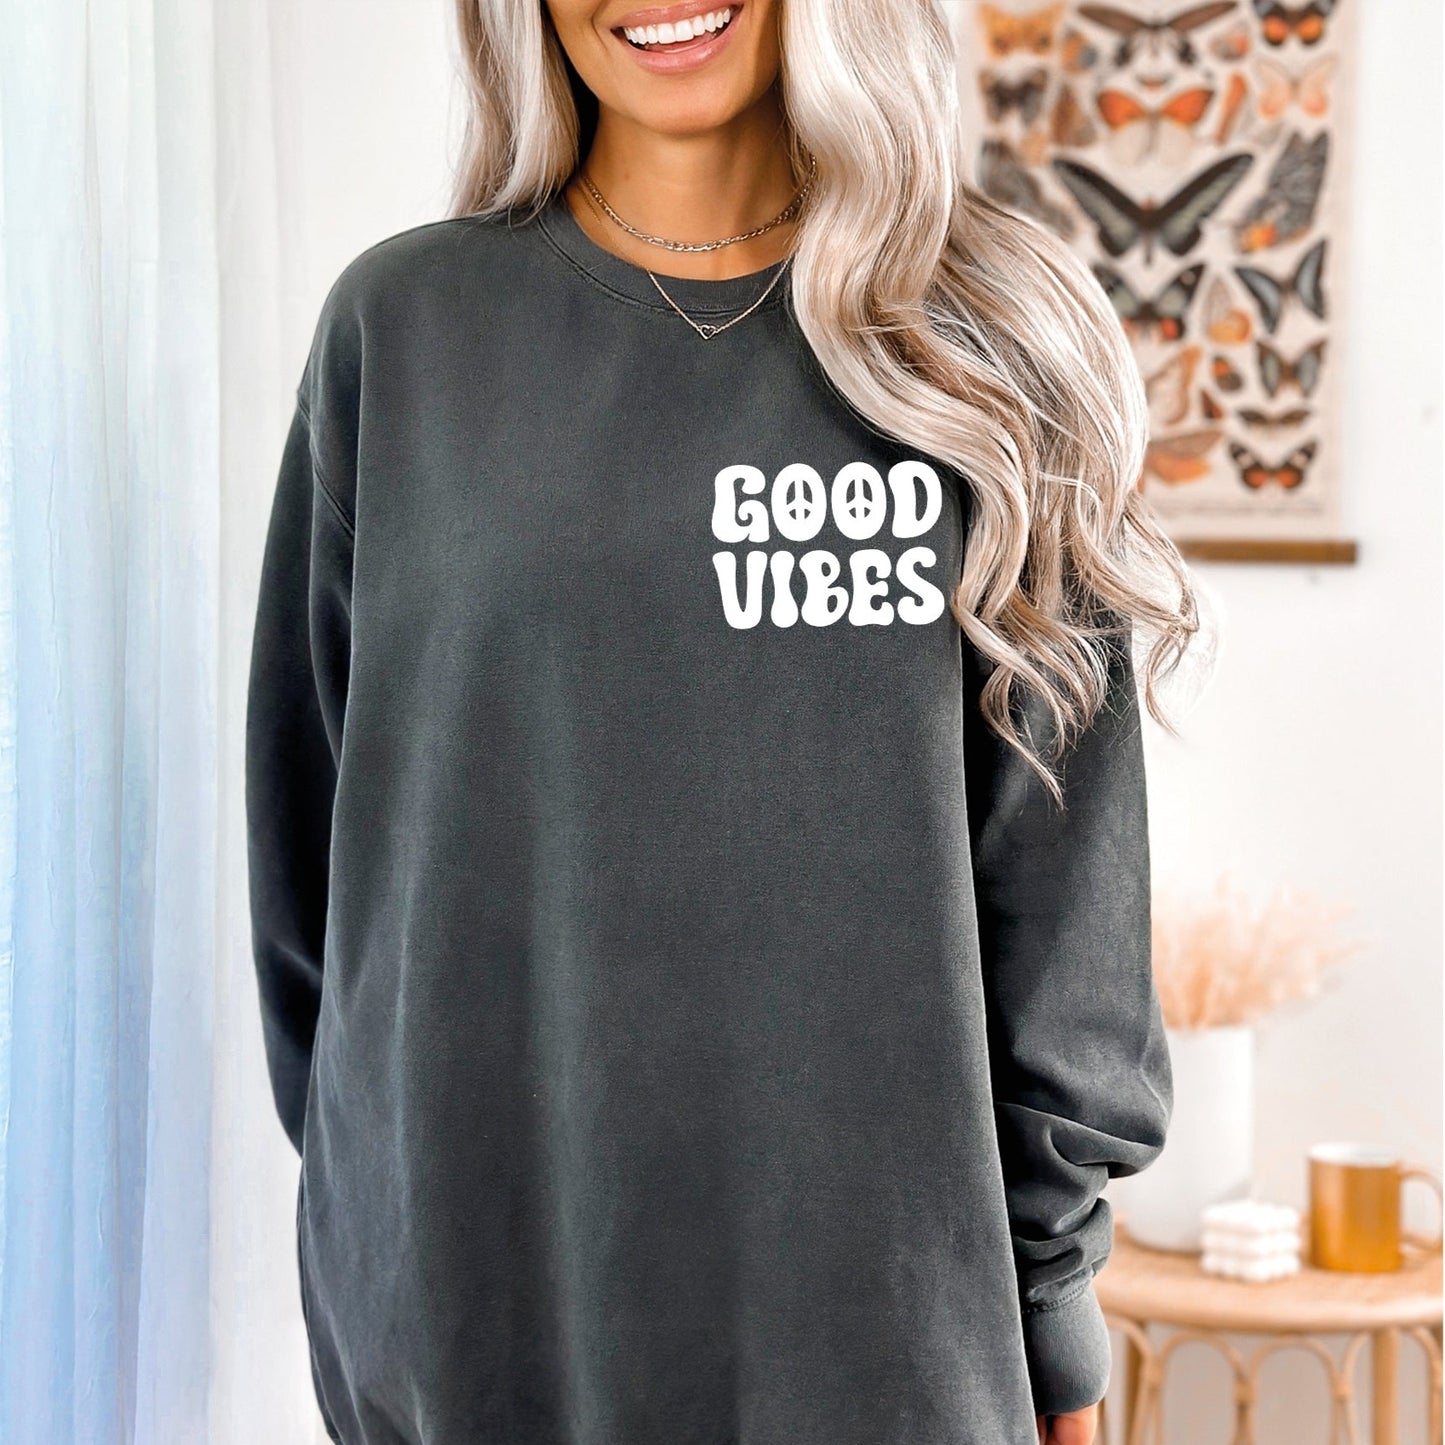 Good Vibes Sweatshirt, Positive Vibes Sweatshirt, Comfort Colors Sweatshirt-newamarketing